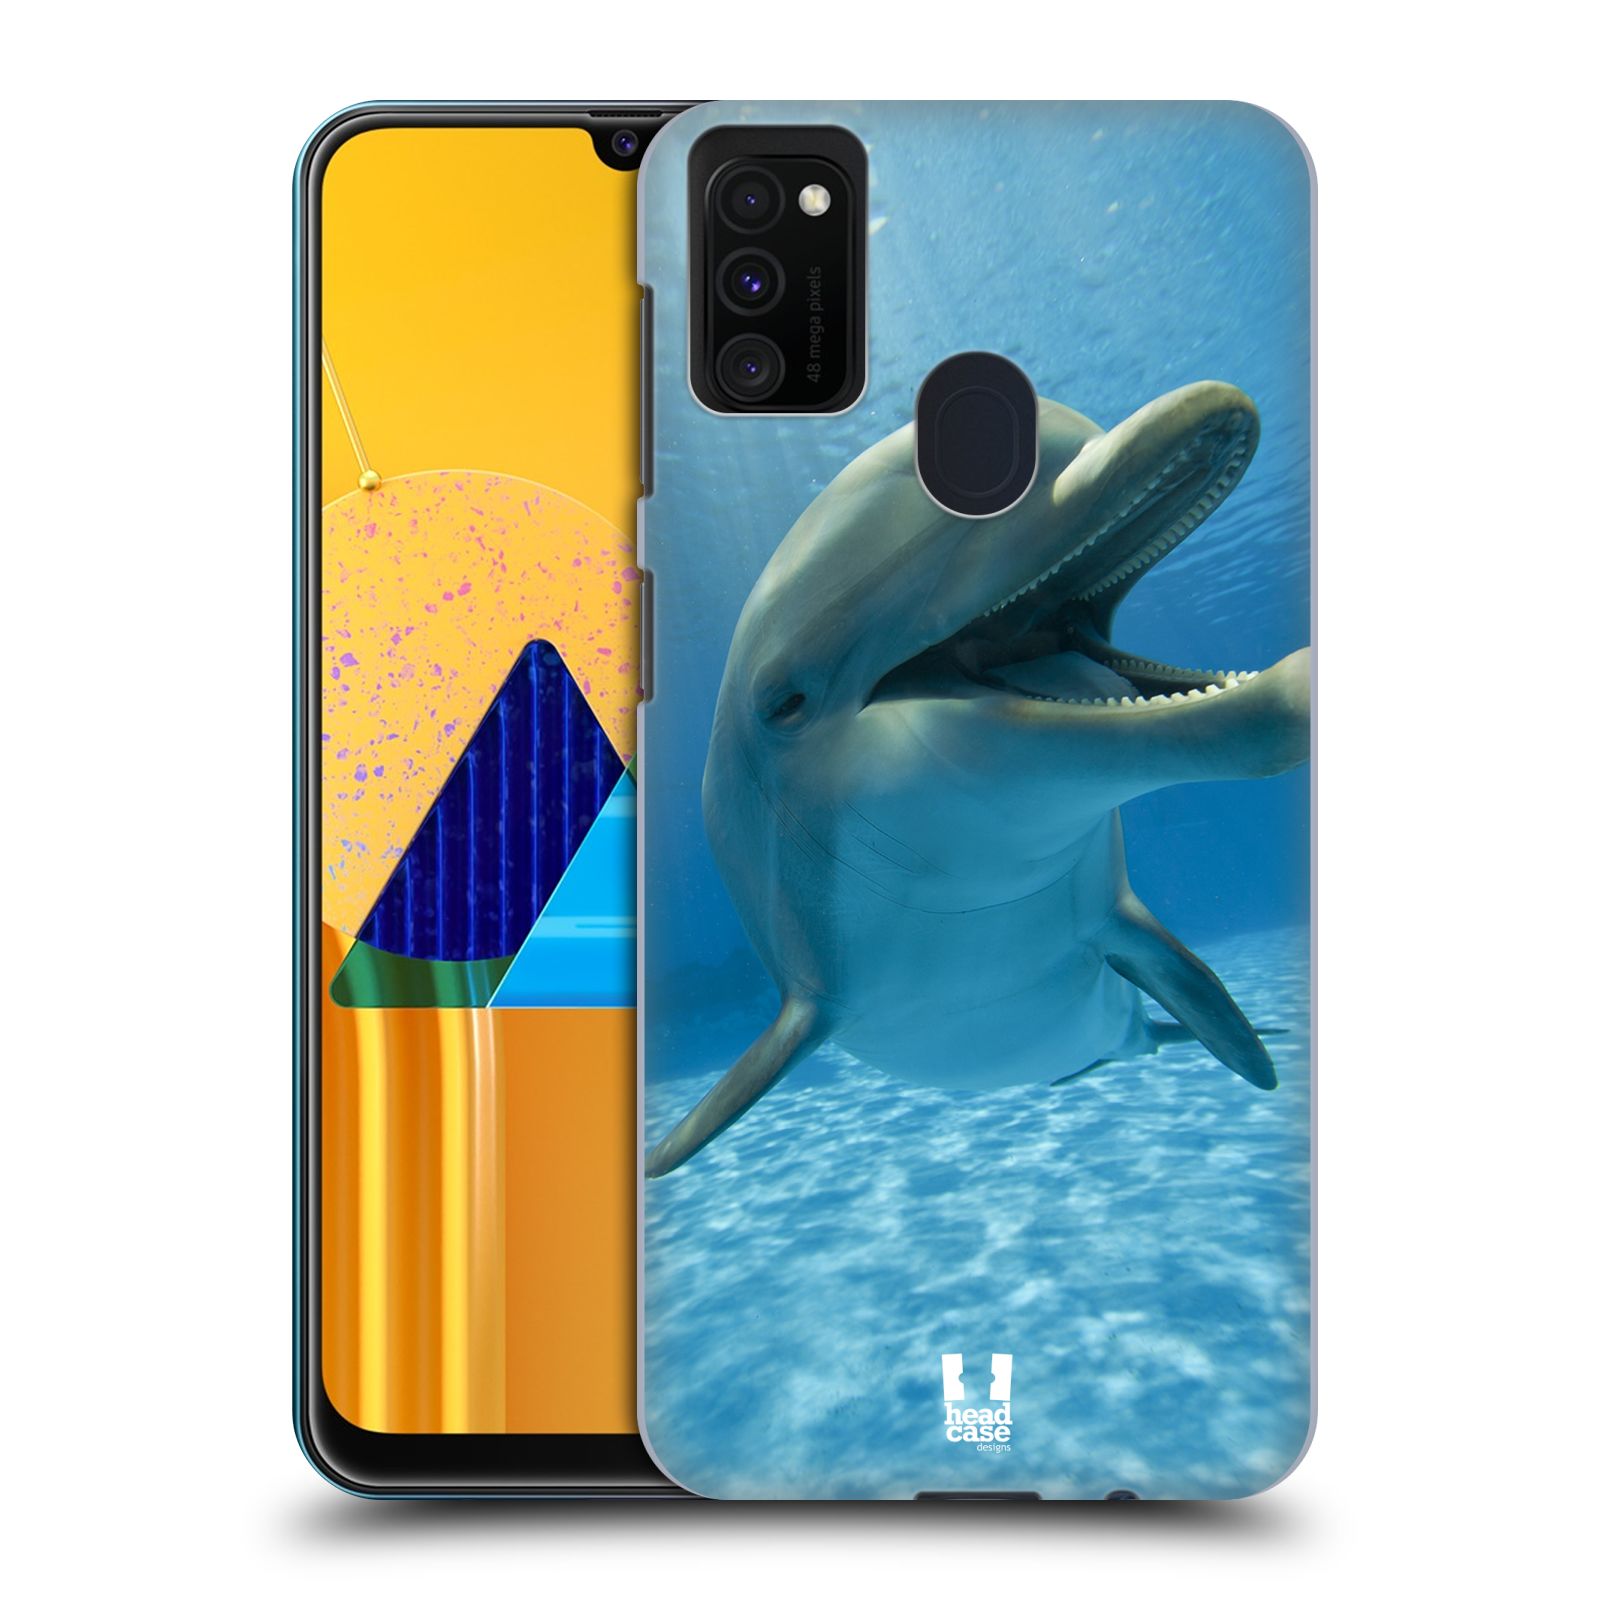 Zadní obal pro mobil Samsung Galaxy M21 - HEAD CASE - Svět zvířat delfín v moři